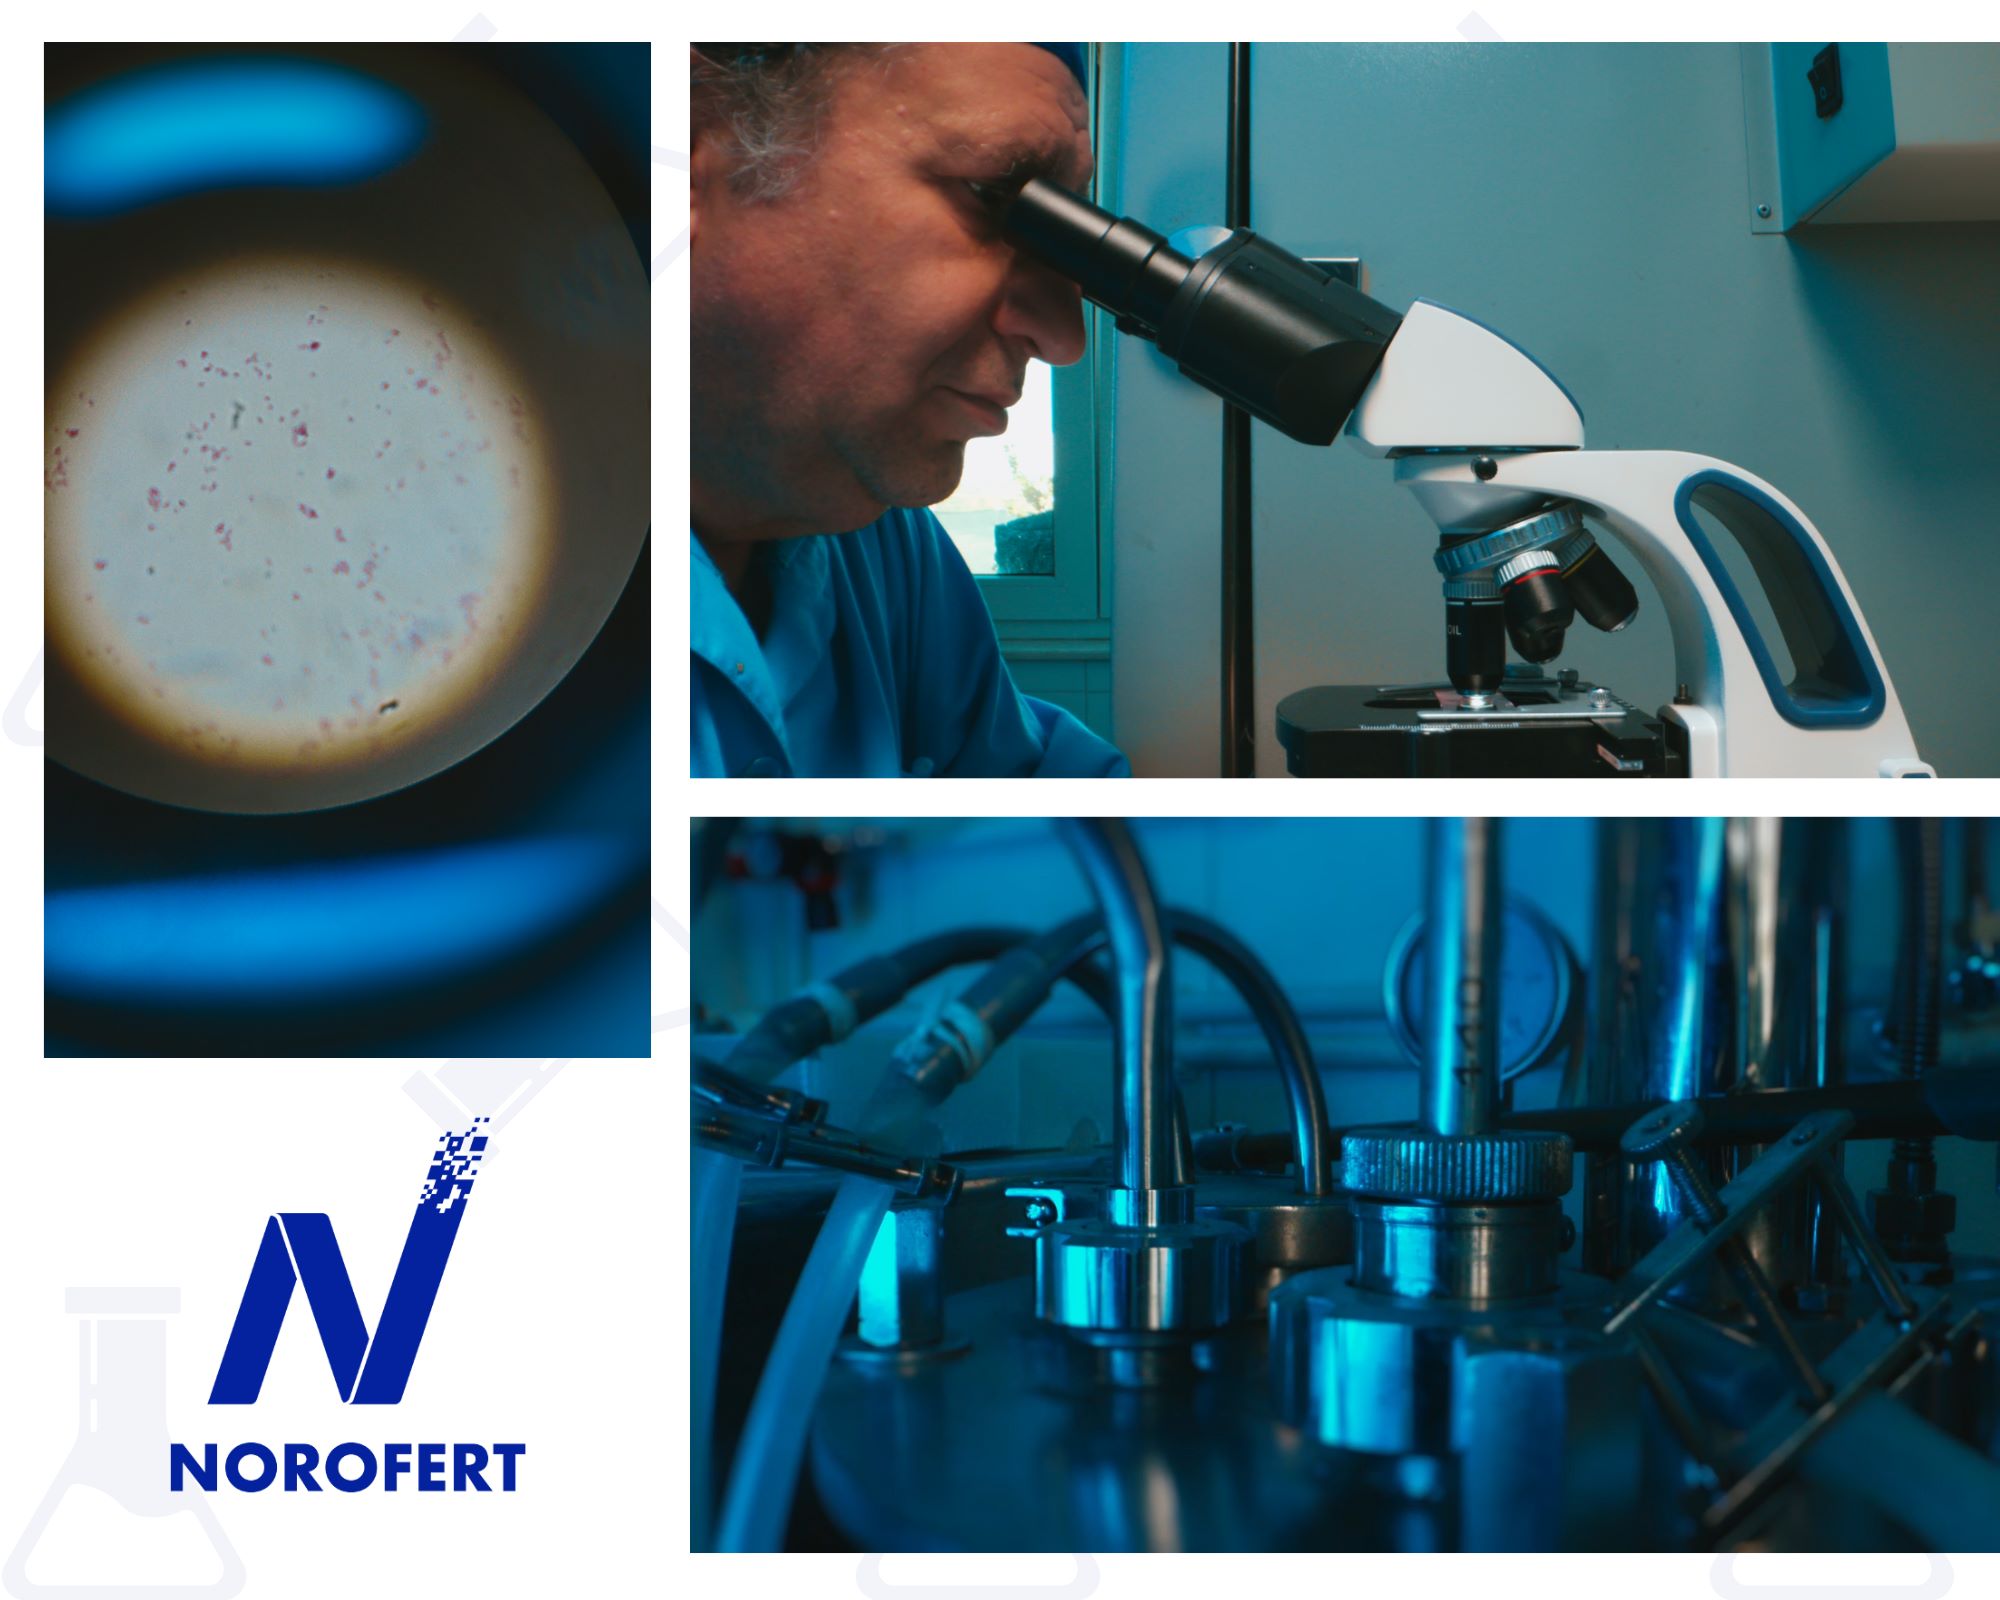 Norofert anunță finalizarea primei etape a laboratorului de cercetare și multiplicare microorganisme pentru agricultură, în urma unei investiții de 3 milioane lei